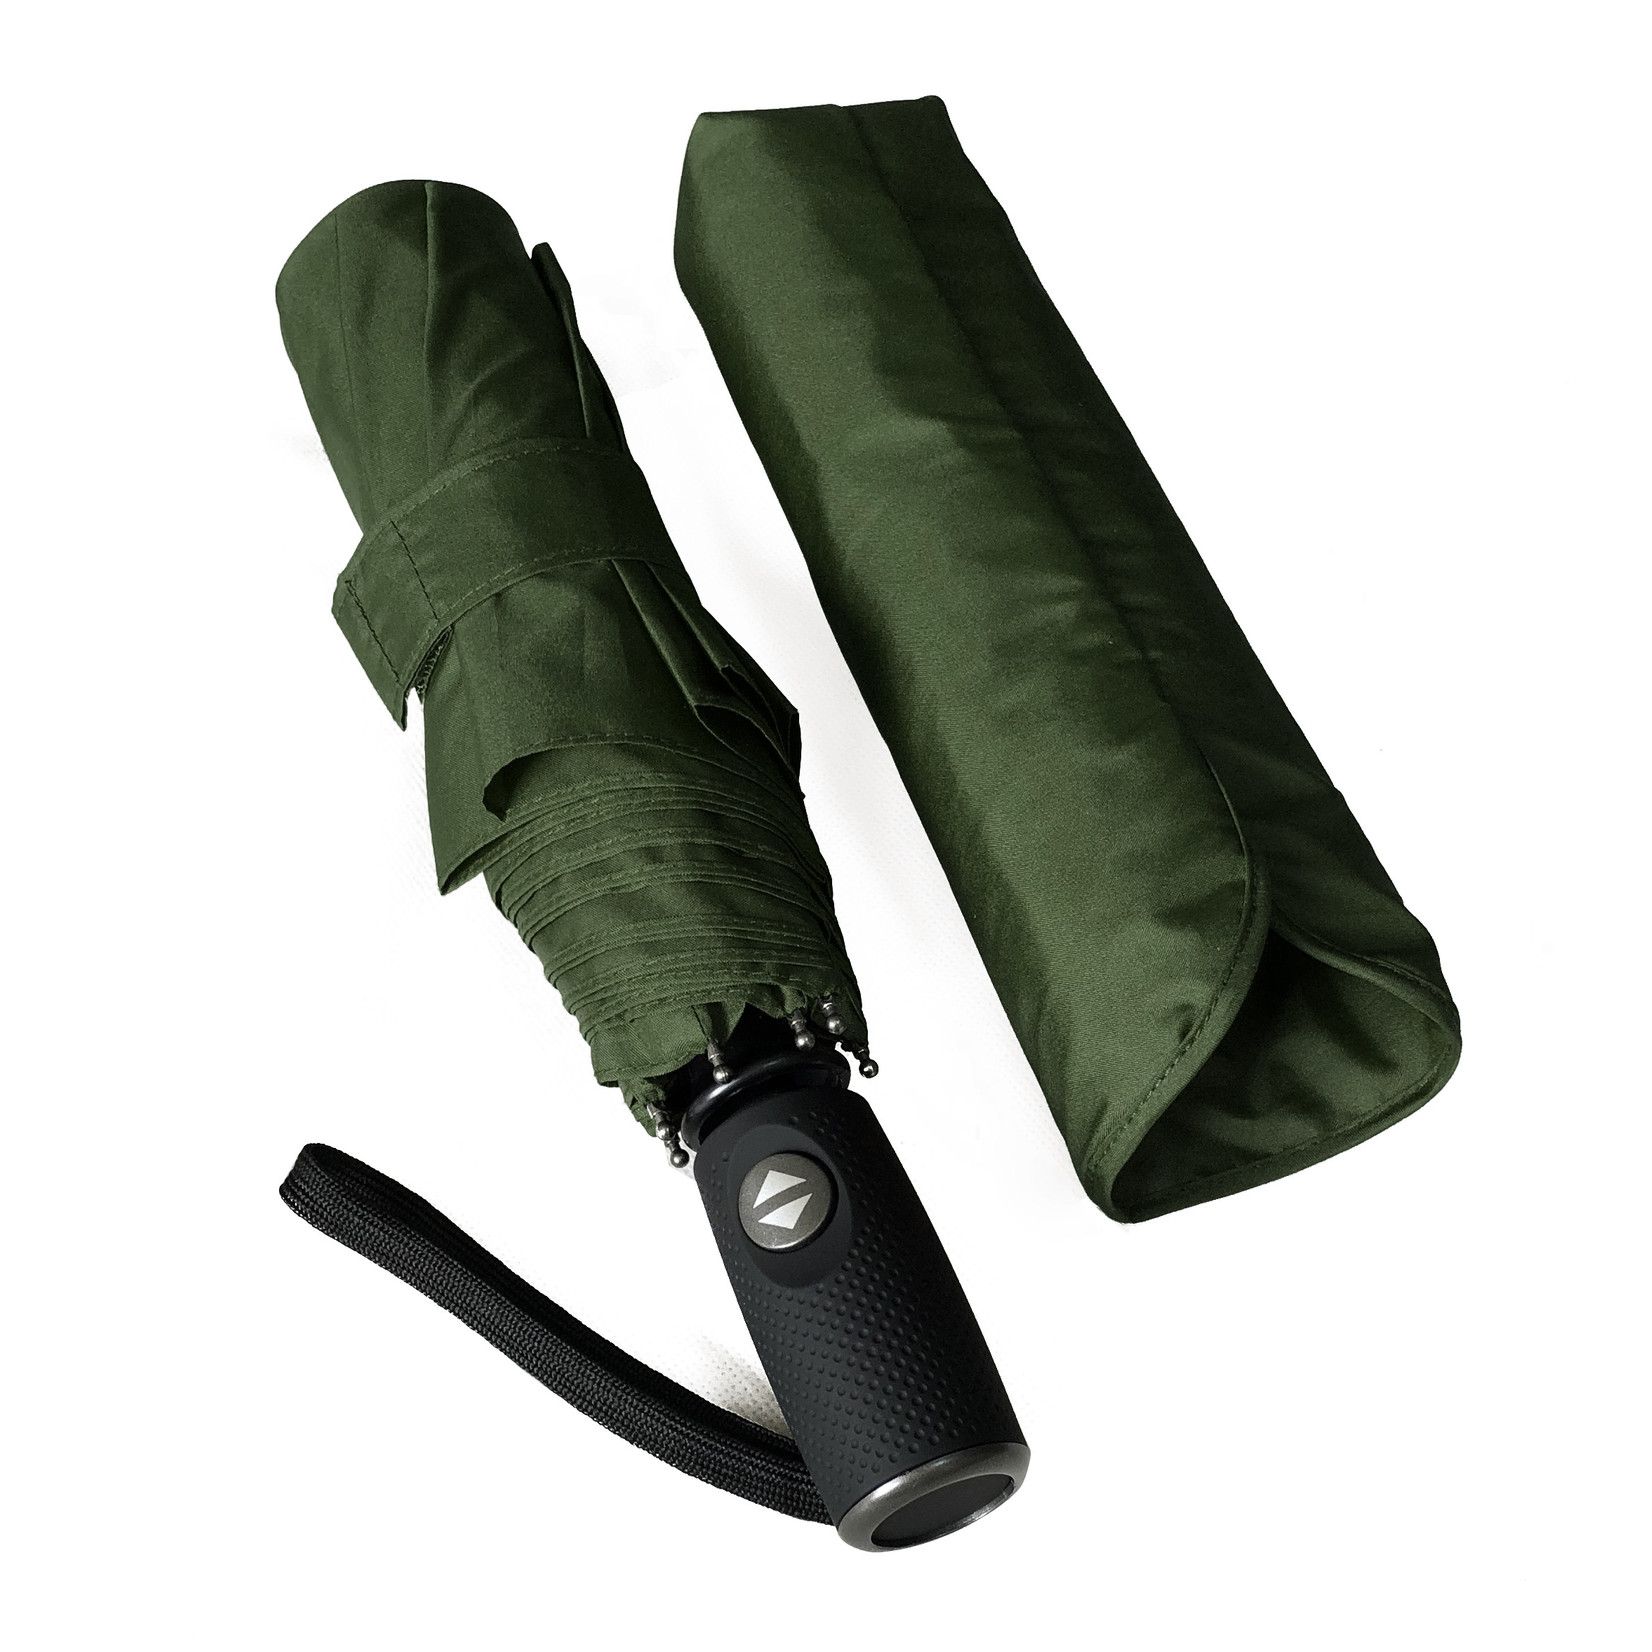 Gideon Storm paraplu (groen) opvouwbaar; windproof - glasvezel frame